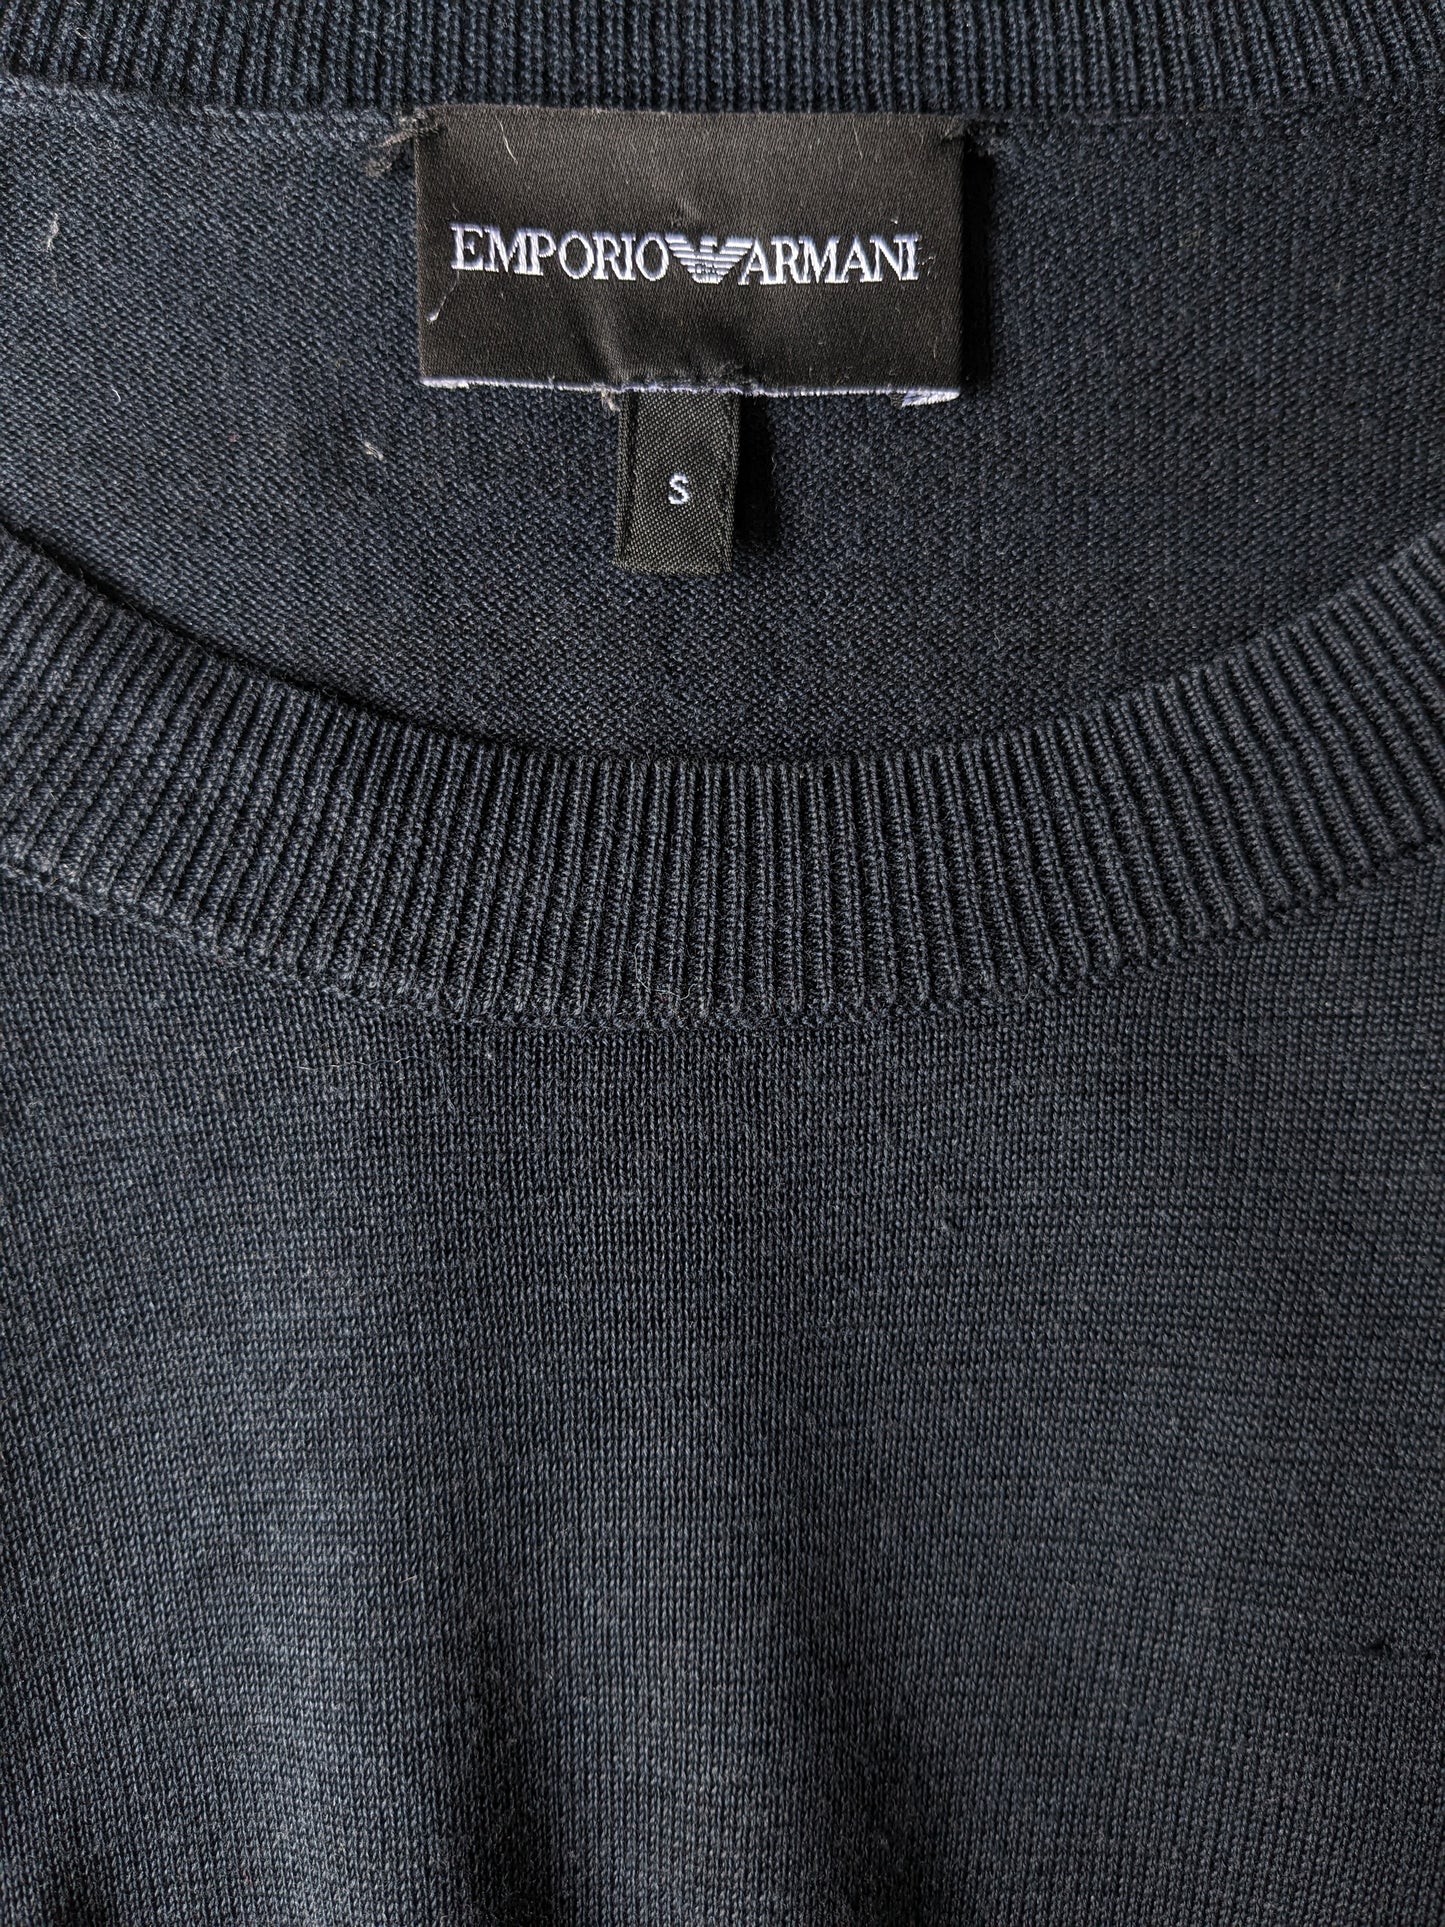 Emporio Armani Thin Pullover. Blau schwarz gefärbt. Größe S.